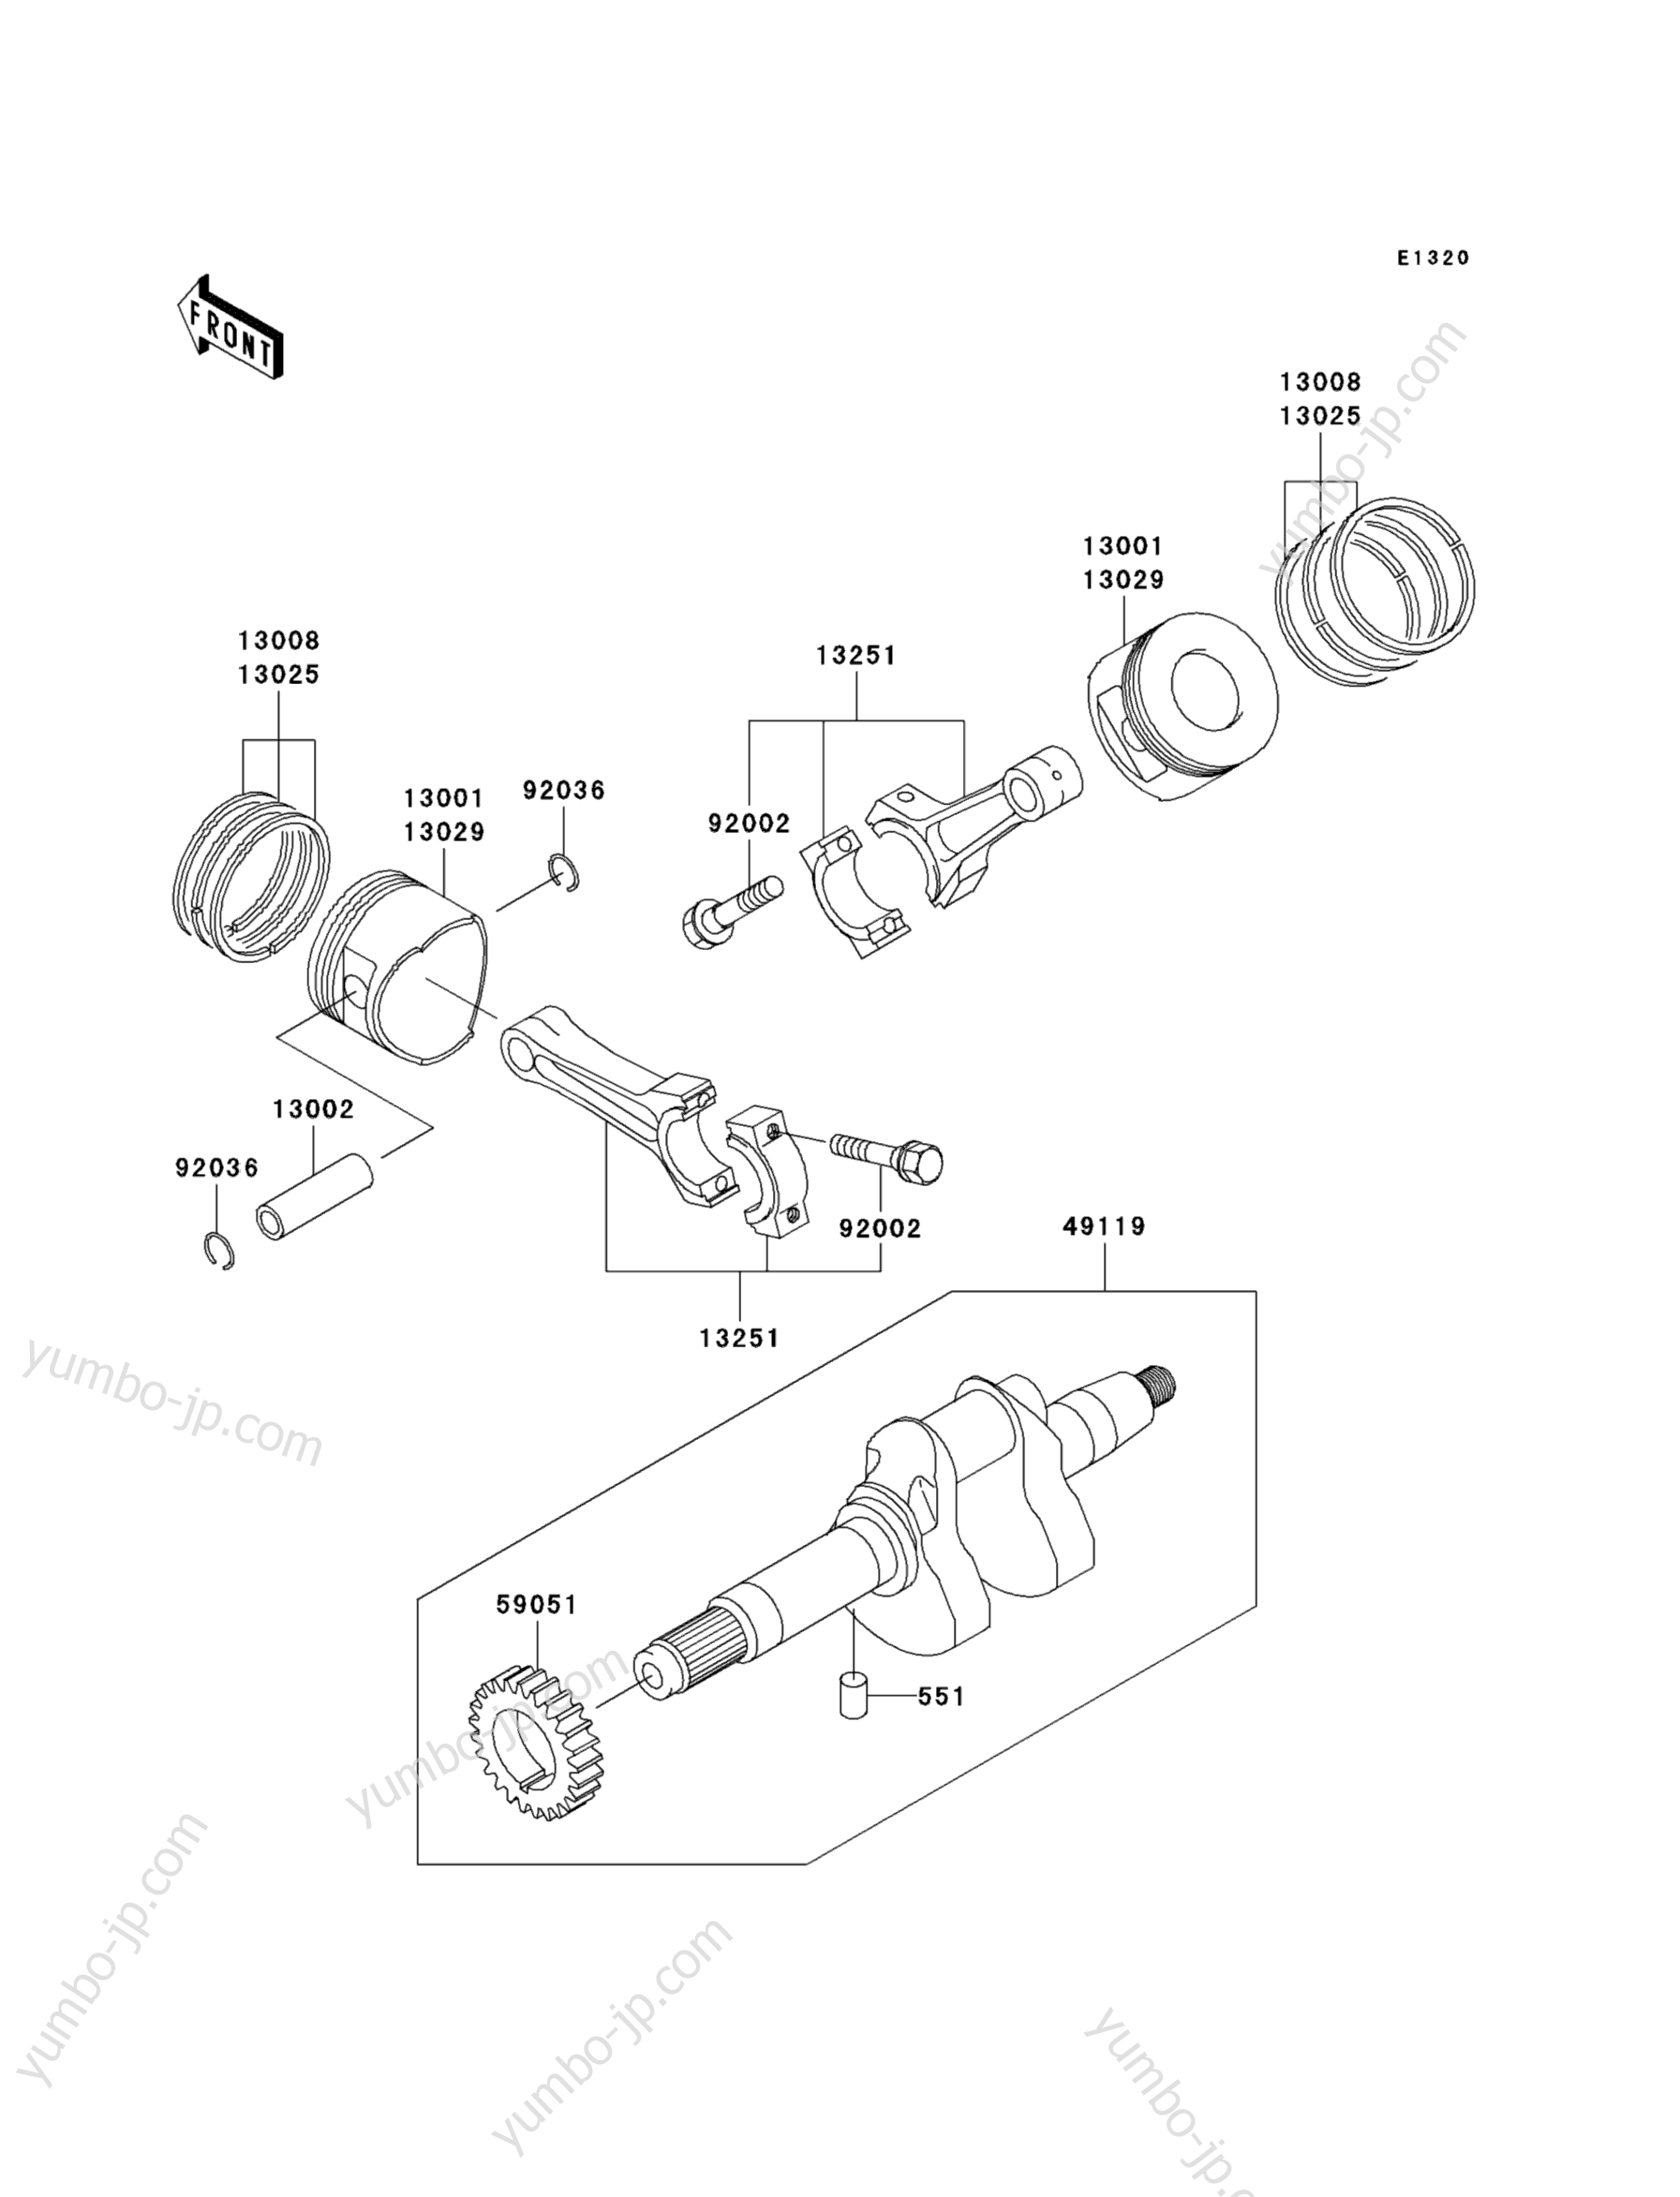 Crankshaft/Piston(s) for UTVs KAWASAKI MULE 3010 4X4 (KAF620-E1) 2007 year